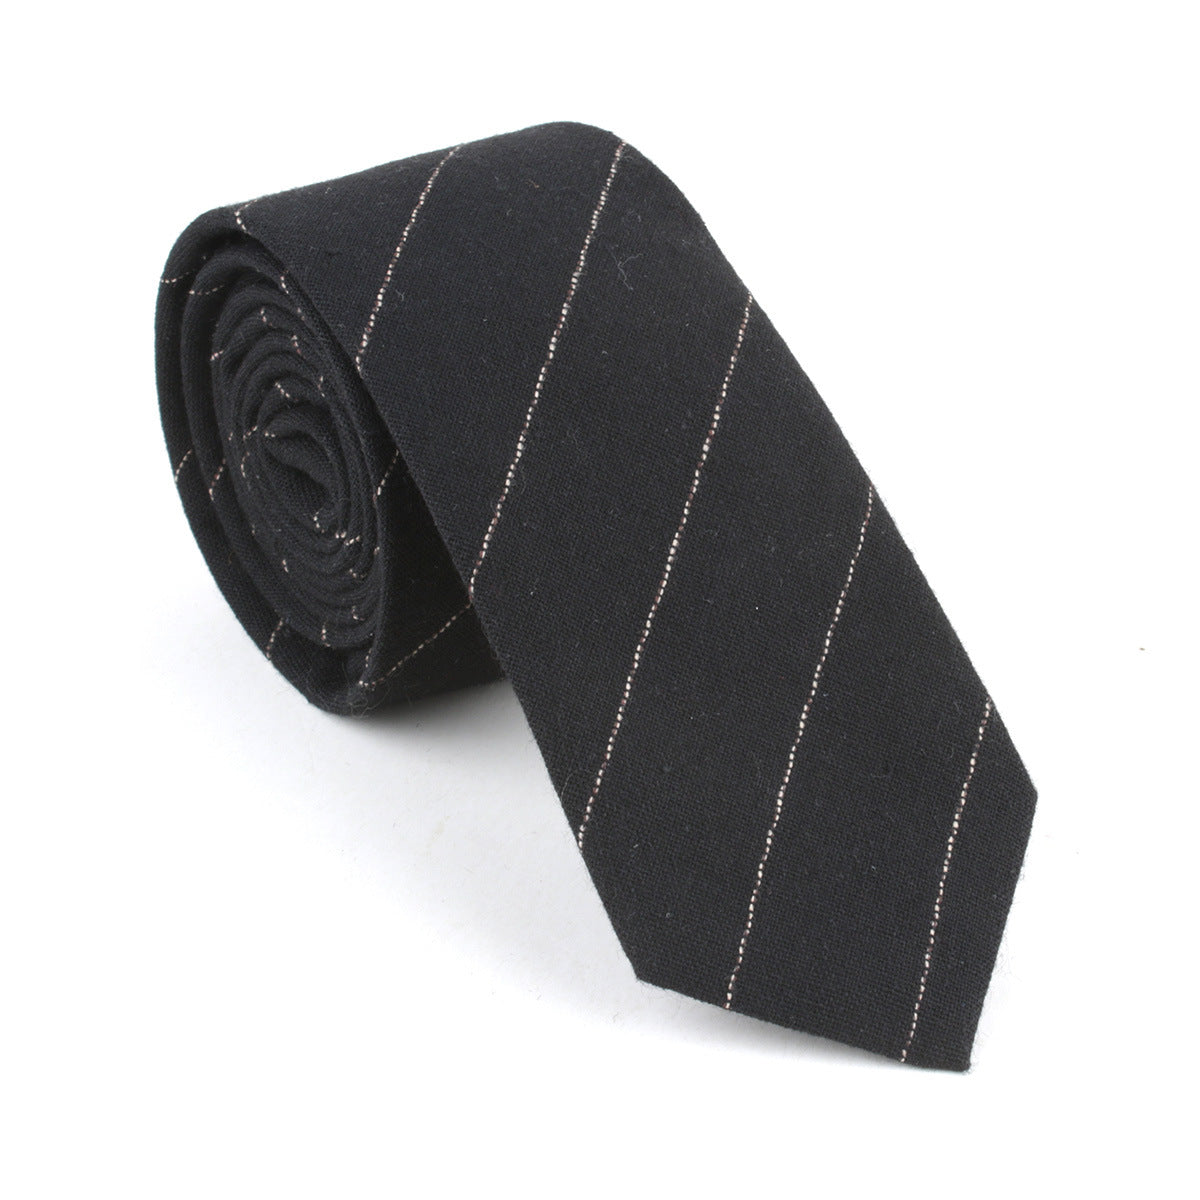 Striped fashion casual tie